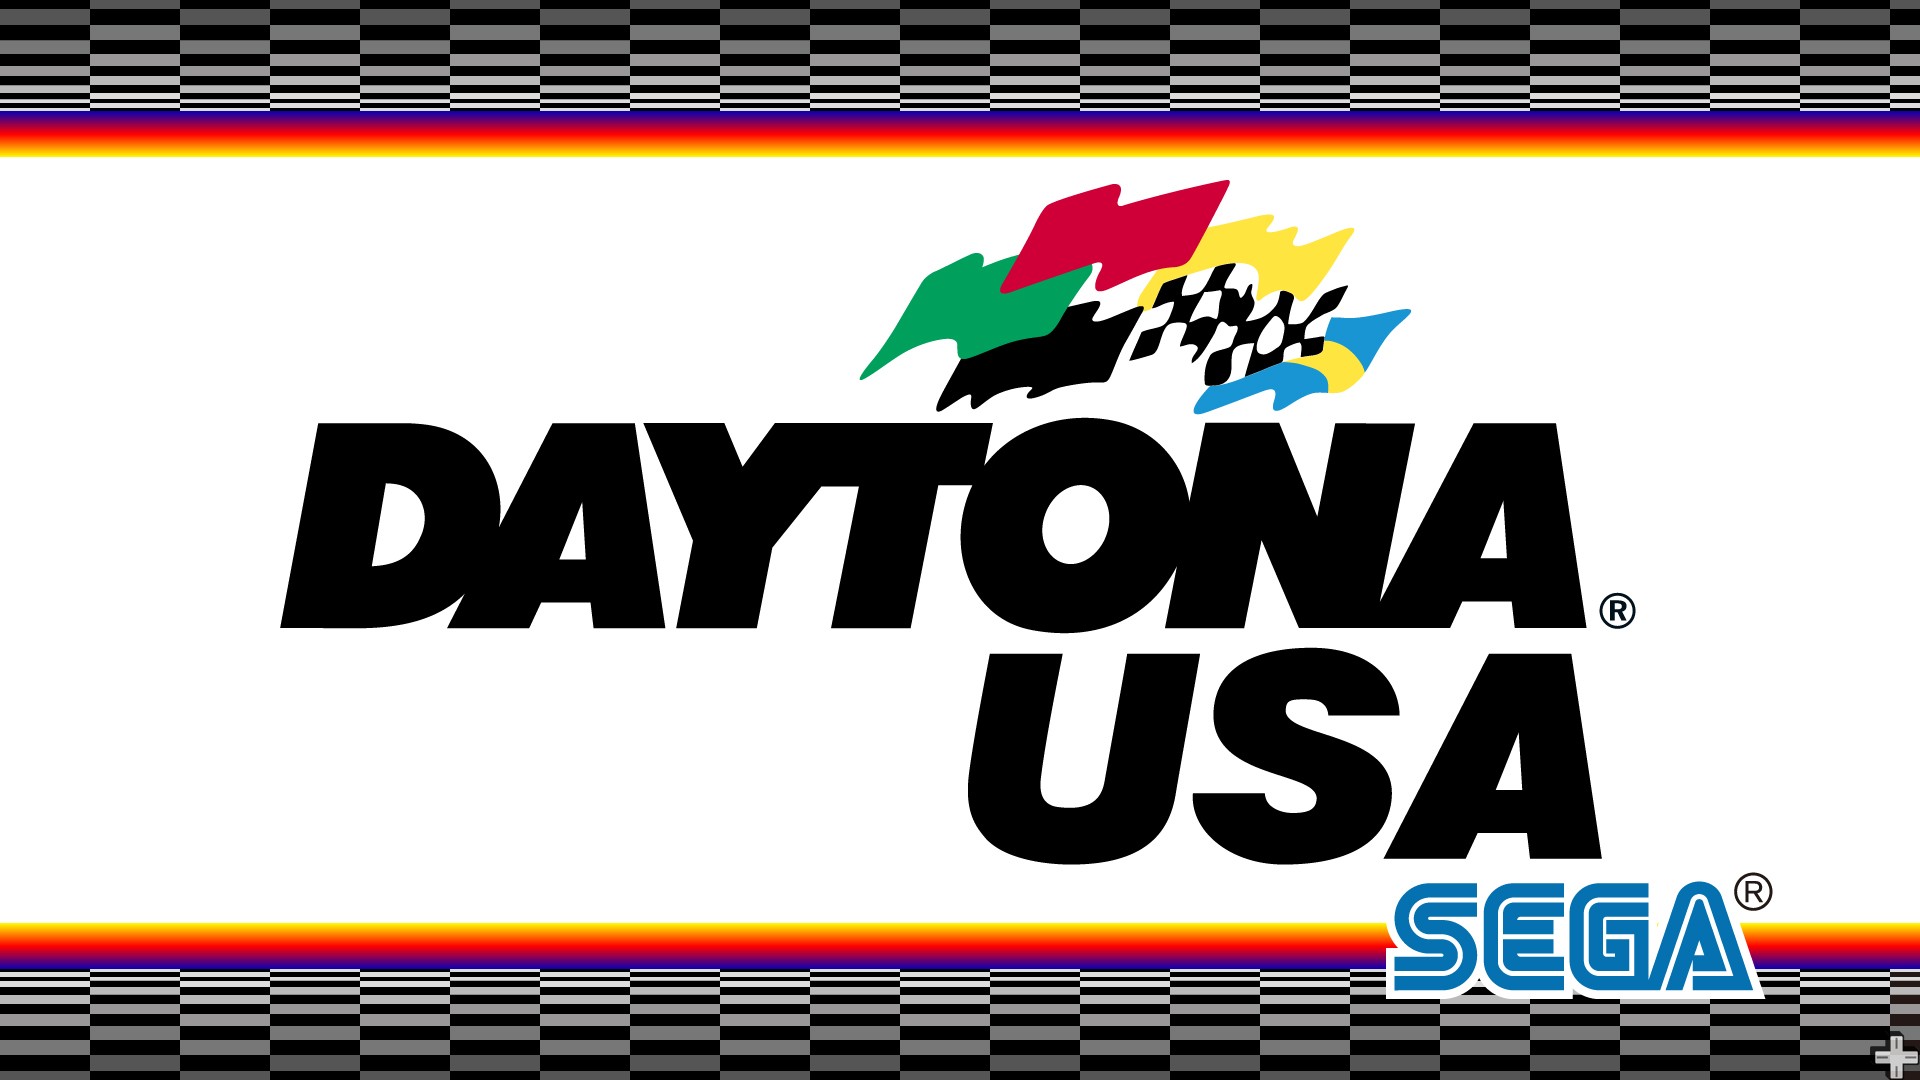 Daytona Usa HD Wallpaper Background Image Id